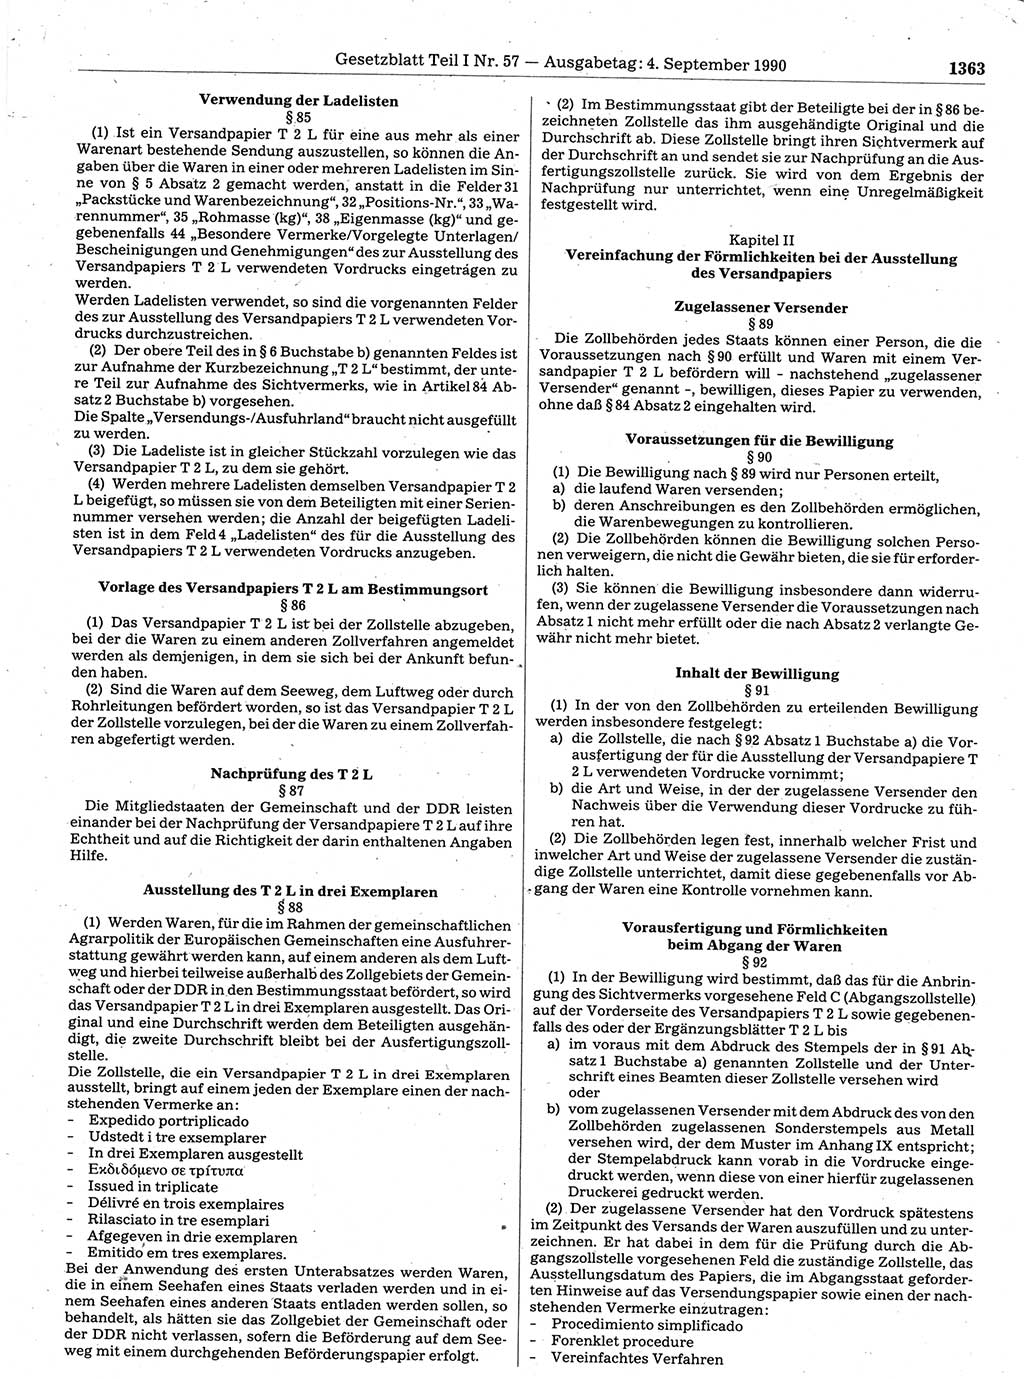 Gesetzblatt (GBl.) der Deutschen Demokratischen Republik (DDR) Teil Ⅰ 1990, Seite 1363 (GBl. DDR Ⅰ 1990, S. 1363)